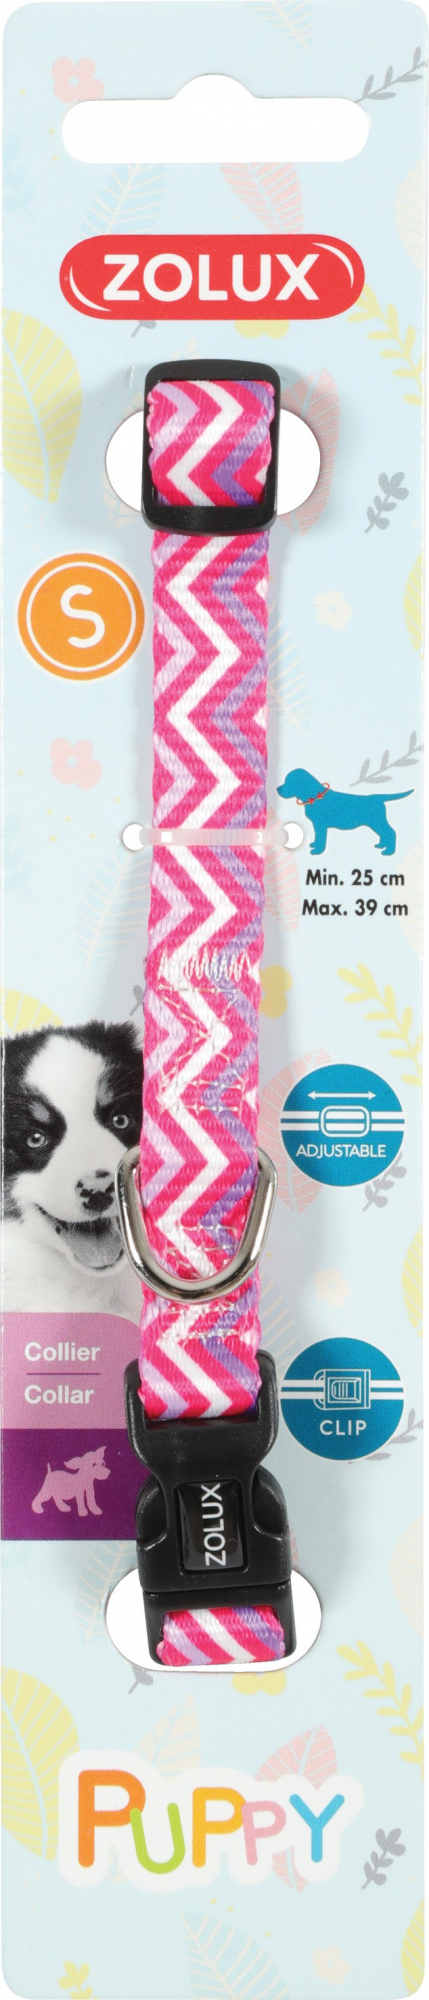 Puppy Pixie Verstellbares Welpen - Nylonhalsband - rosa